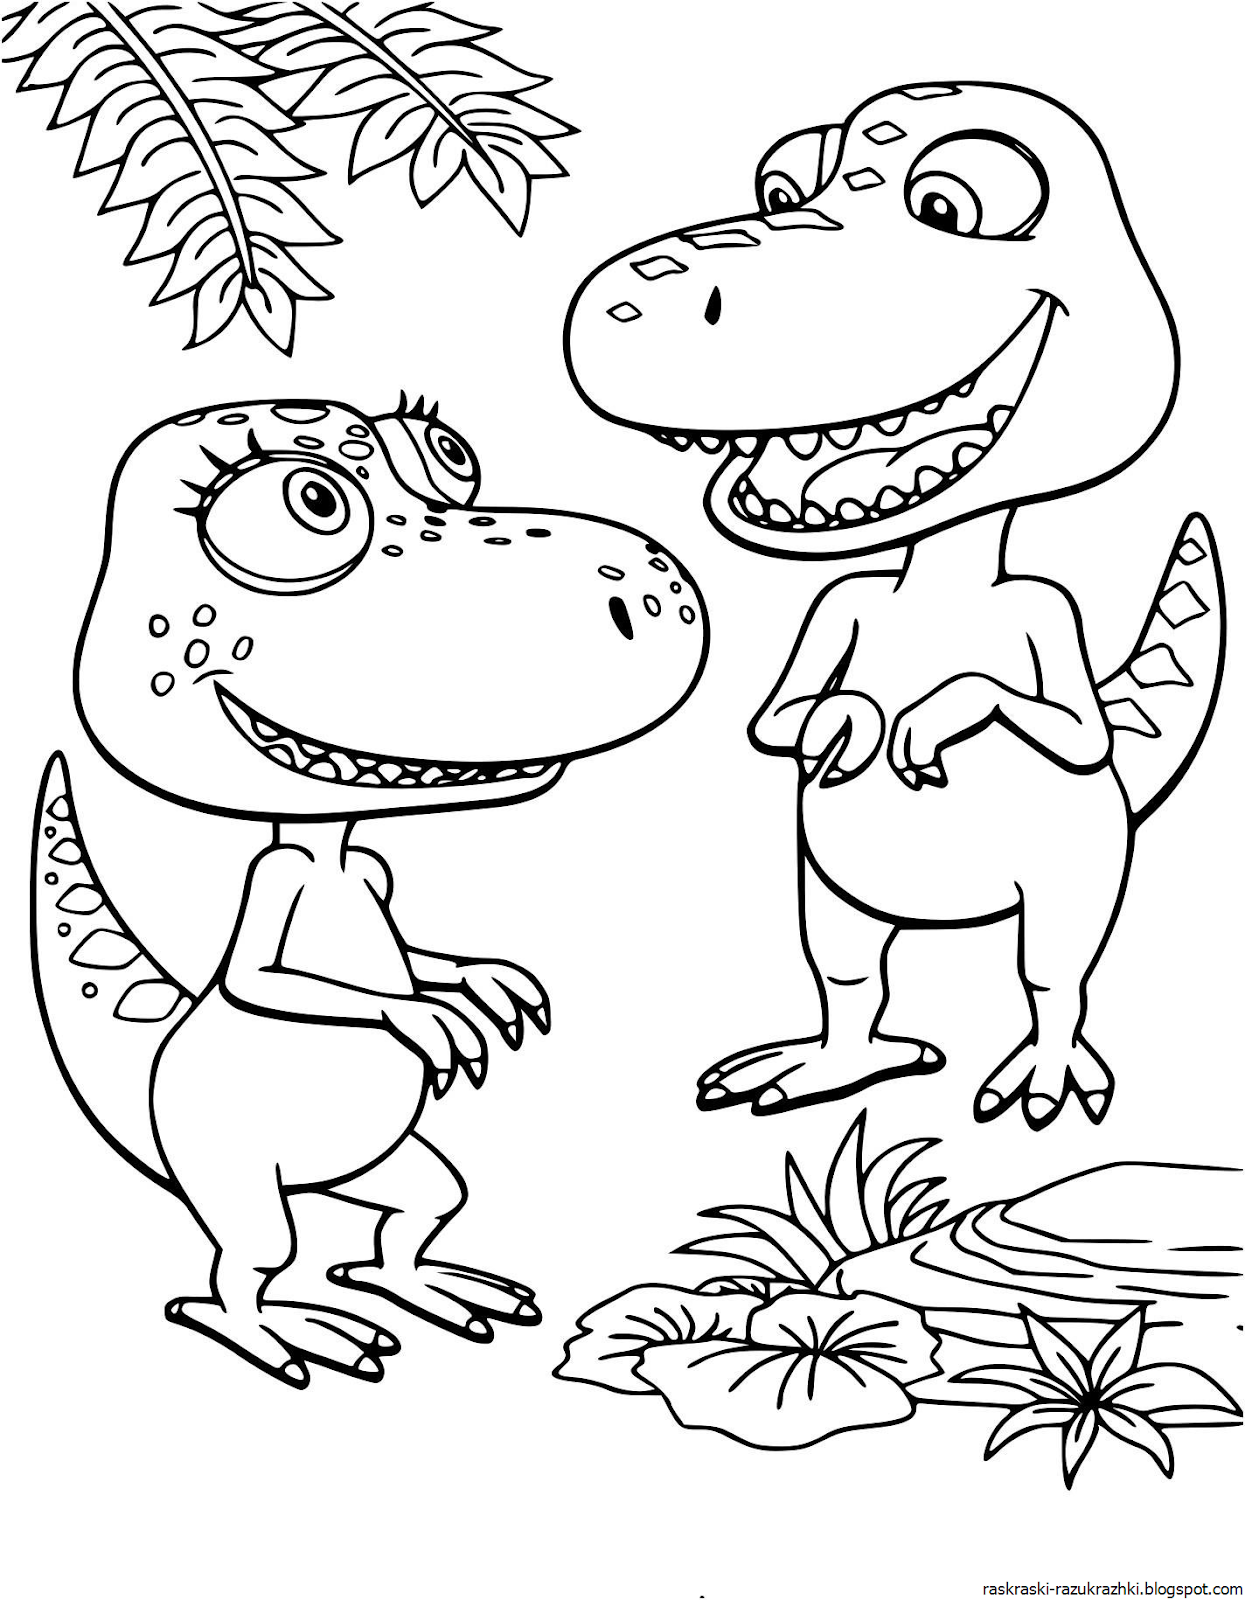 Раскраски динозавры формат а4. Бадди поезд динозавров раскраска. Динозавры / раскраска. Раскраски для мальчиков динозавры.